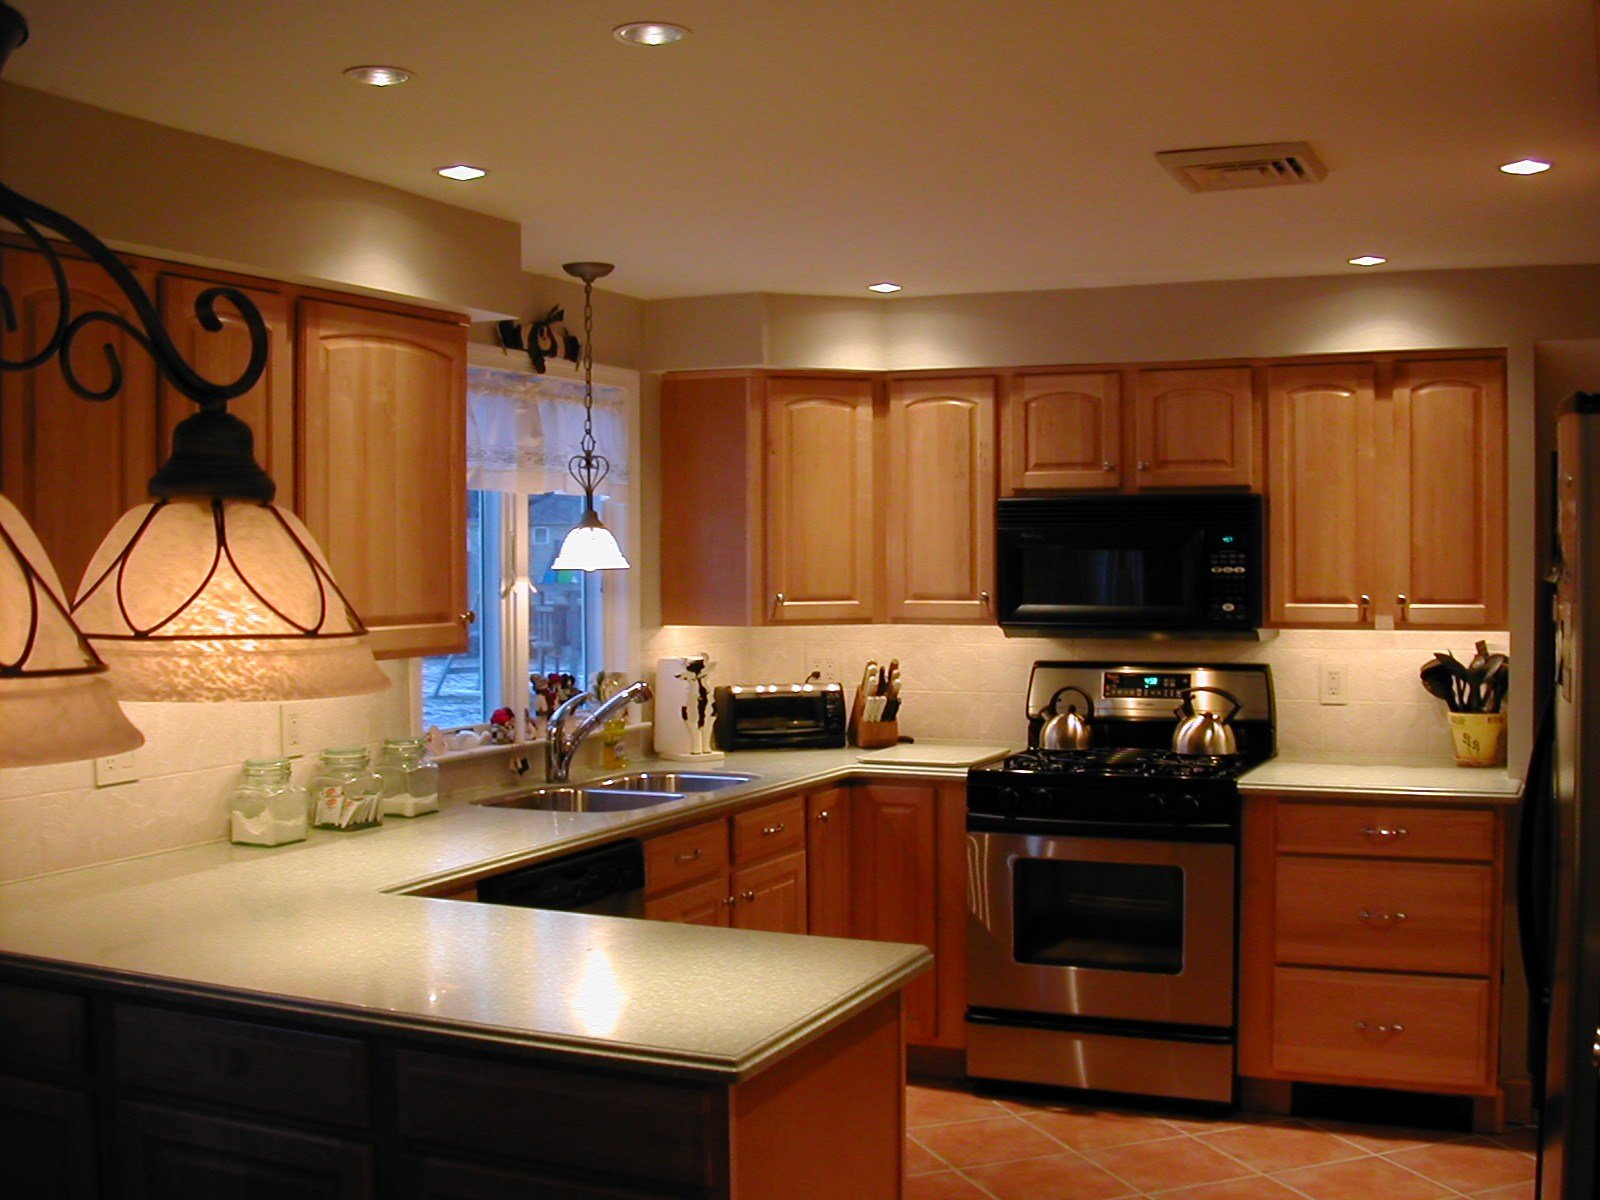 Потолок на кухне - лучшие варианты, фото, монтаж своими руками!